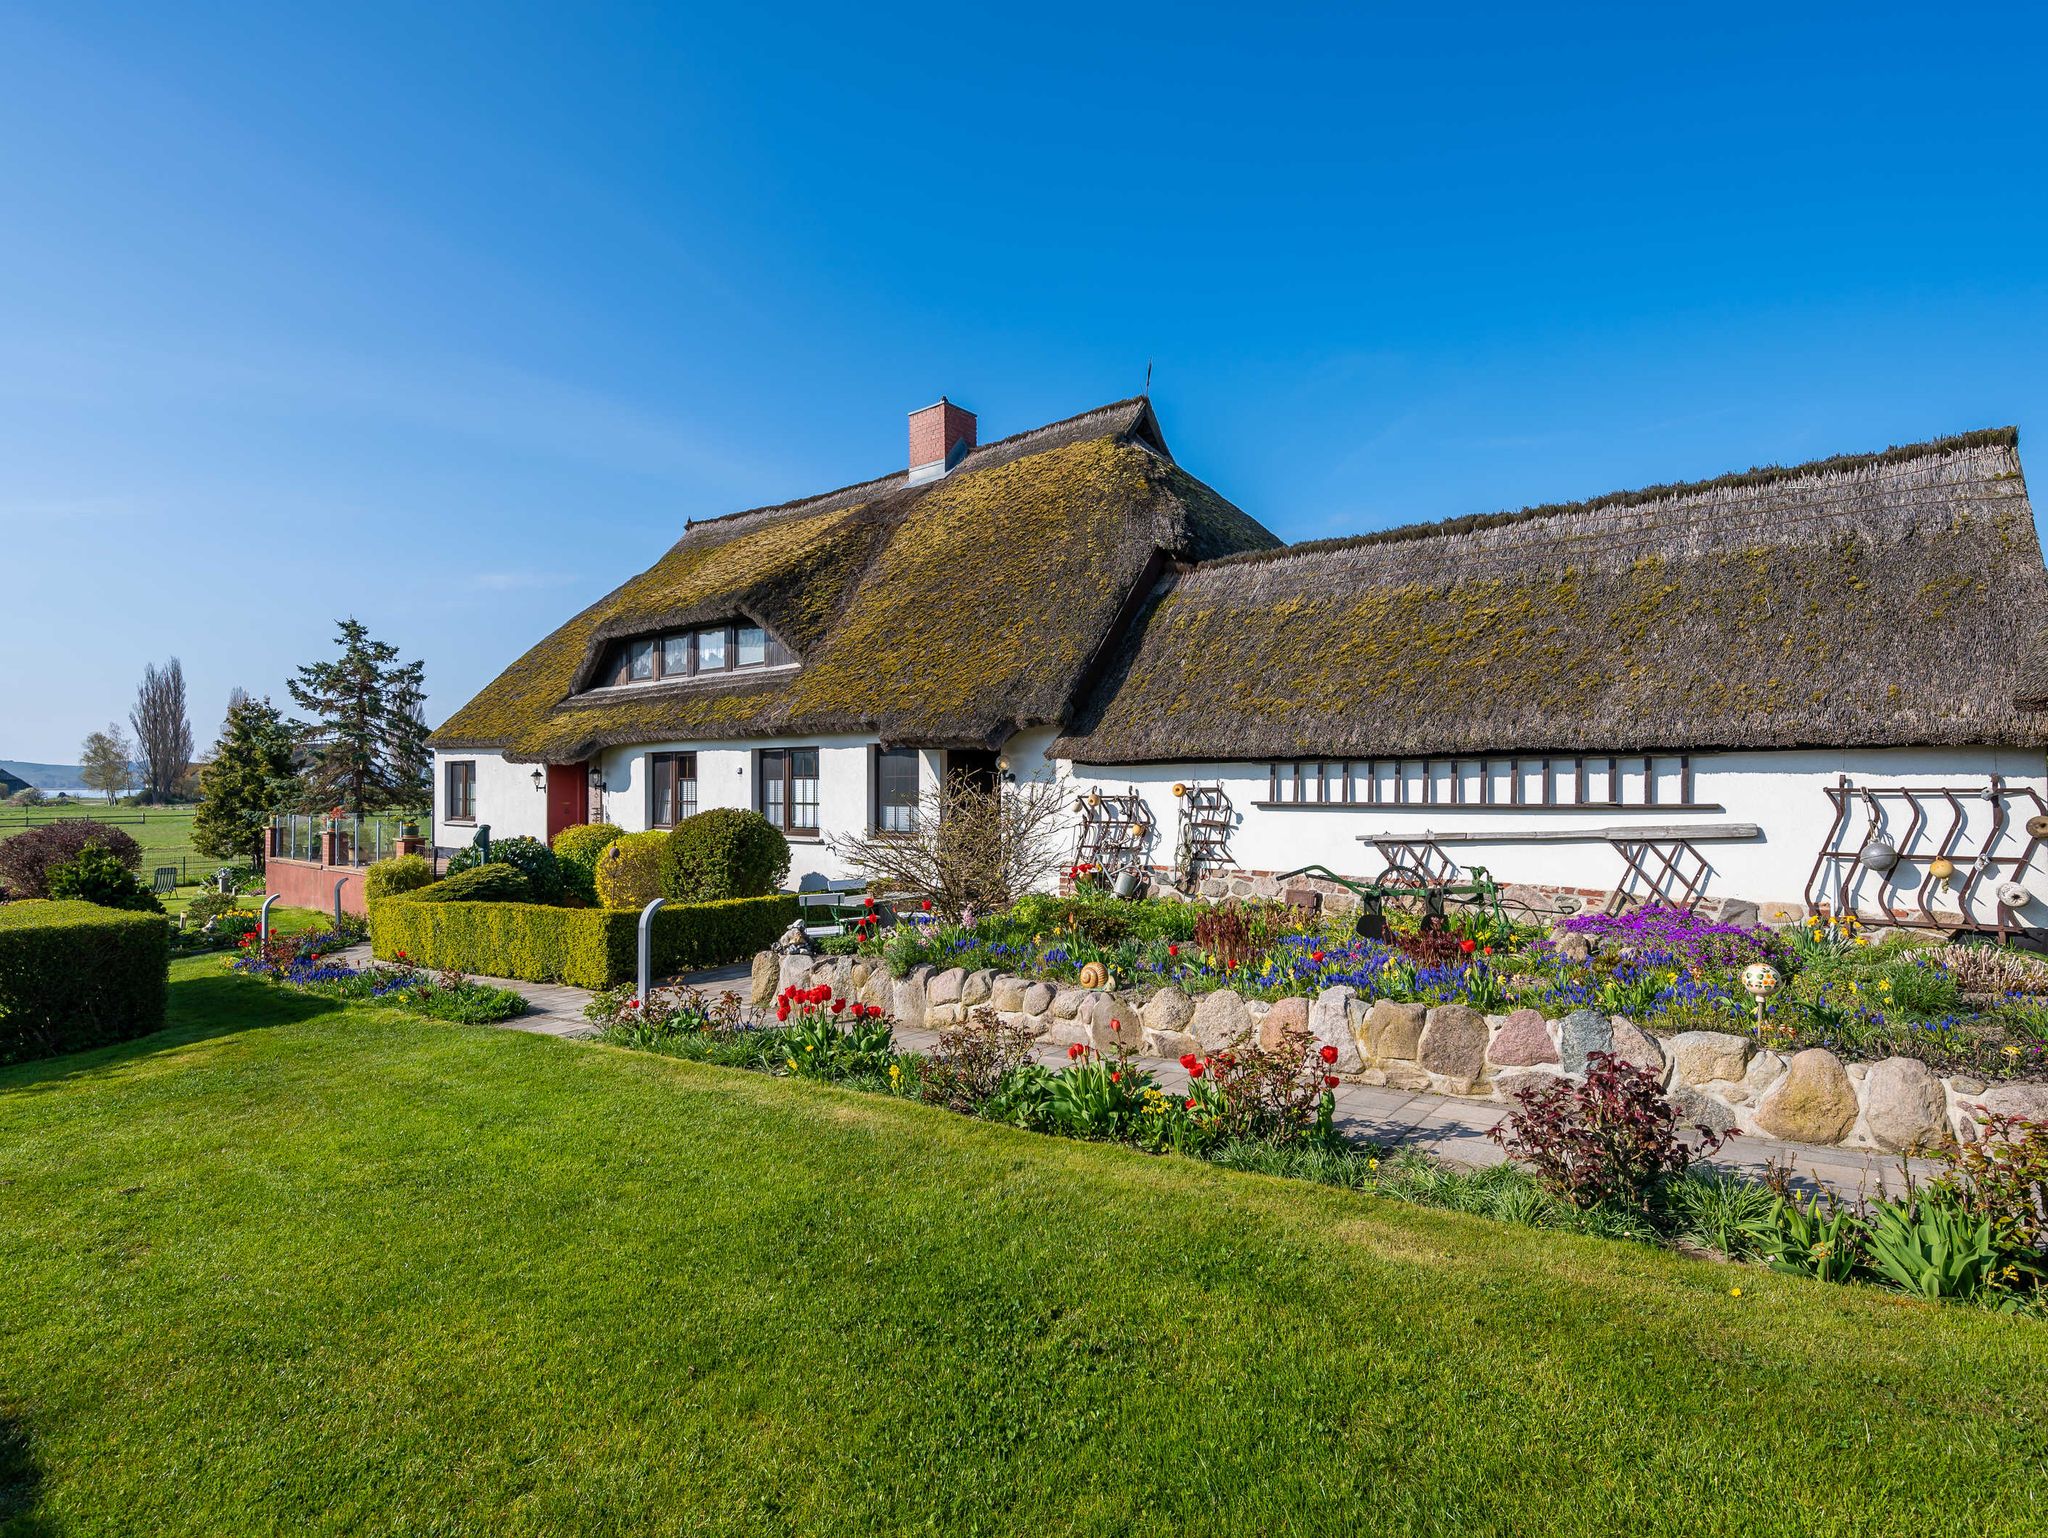 Urlaub im Dänischen Ferienhaus an der Ostsee - Schwarze Holzferienhäuser mit Sauna - 4 Personen - Tipp - Empfehlung